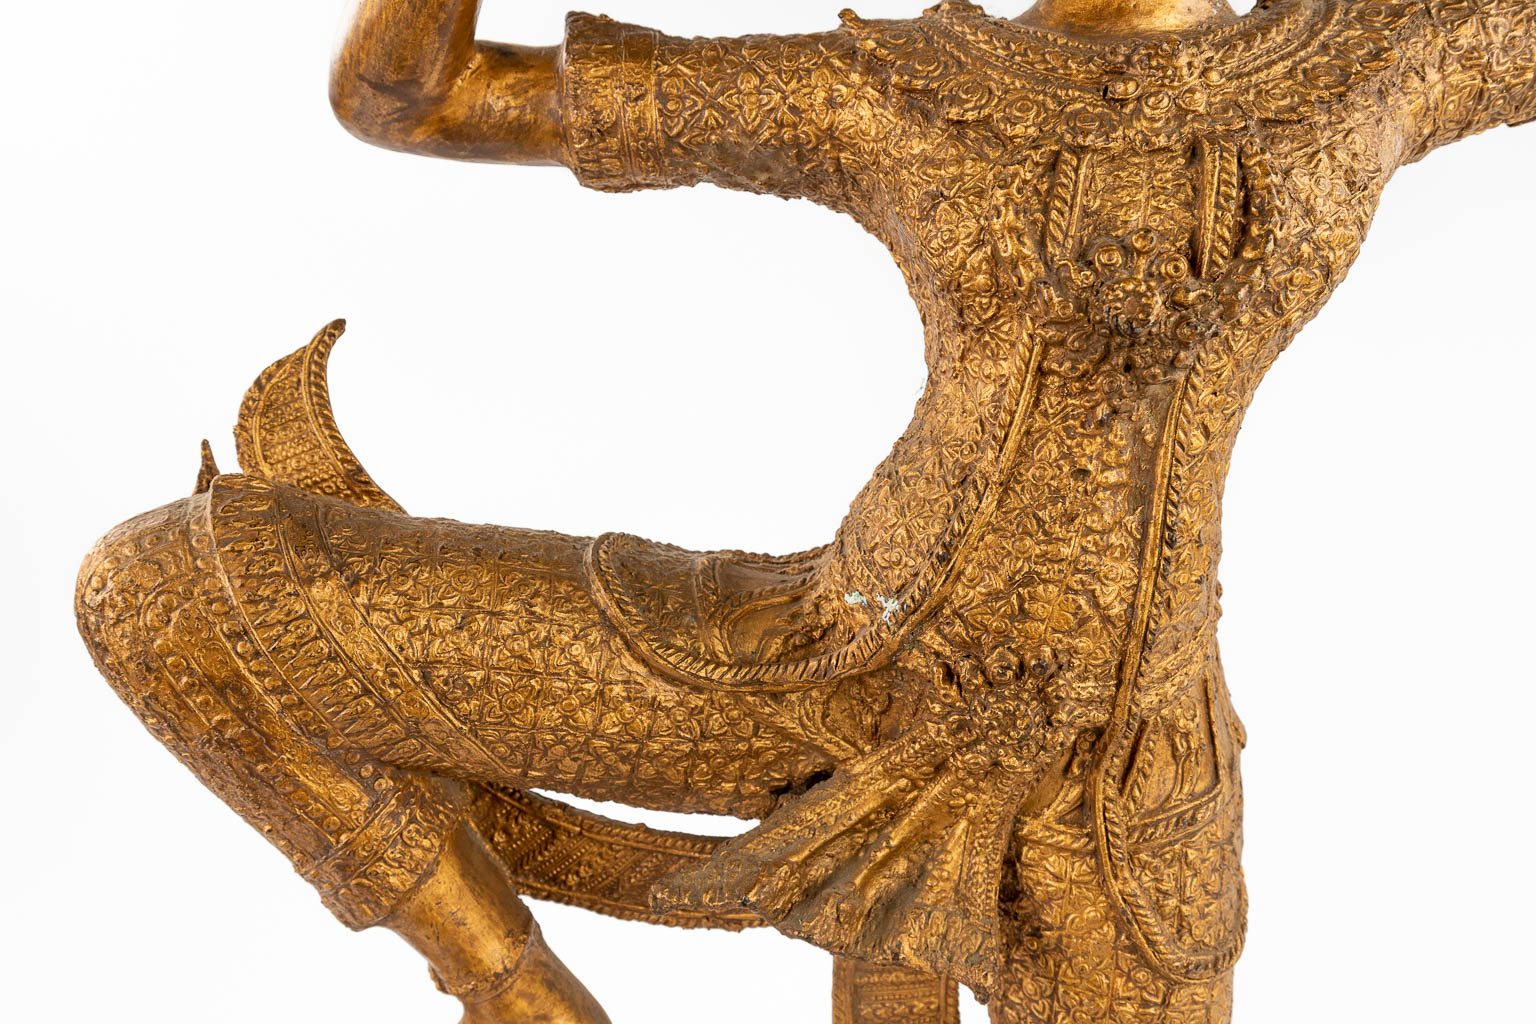 A decoratieve Balinese dancer, gilt metal. 20th C. (W:50 x H:75 cm)